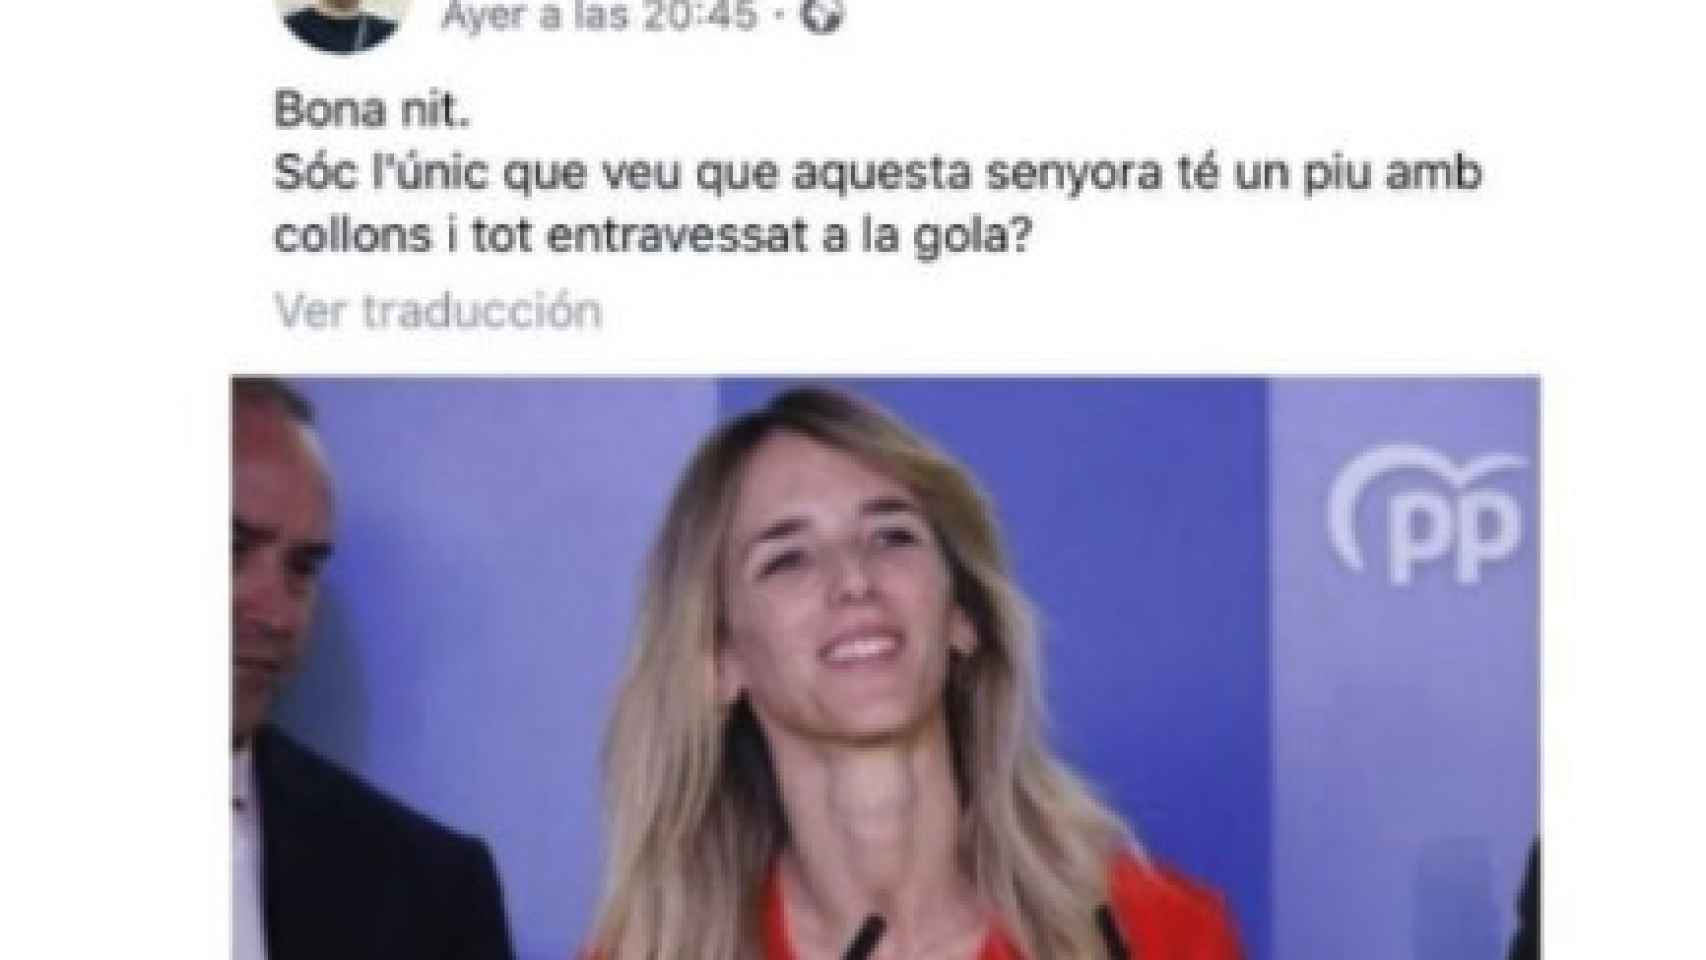 Mensaje en redes compartido por el concejal del PSOE contra Cayetana Álvarez de Toledo.